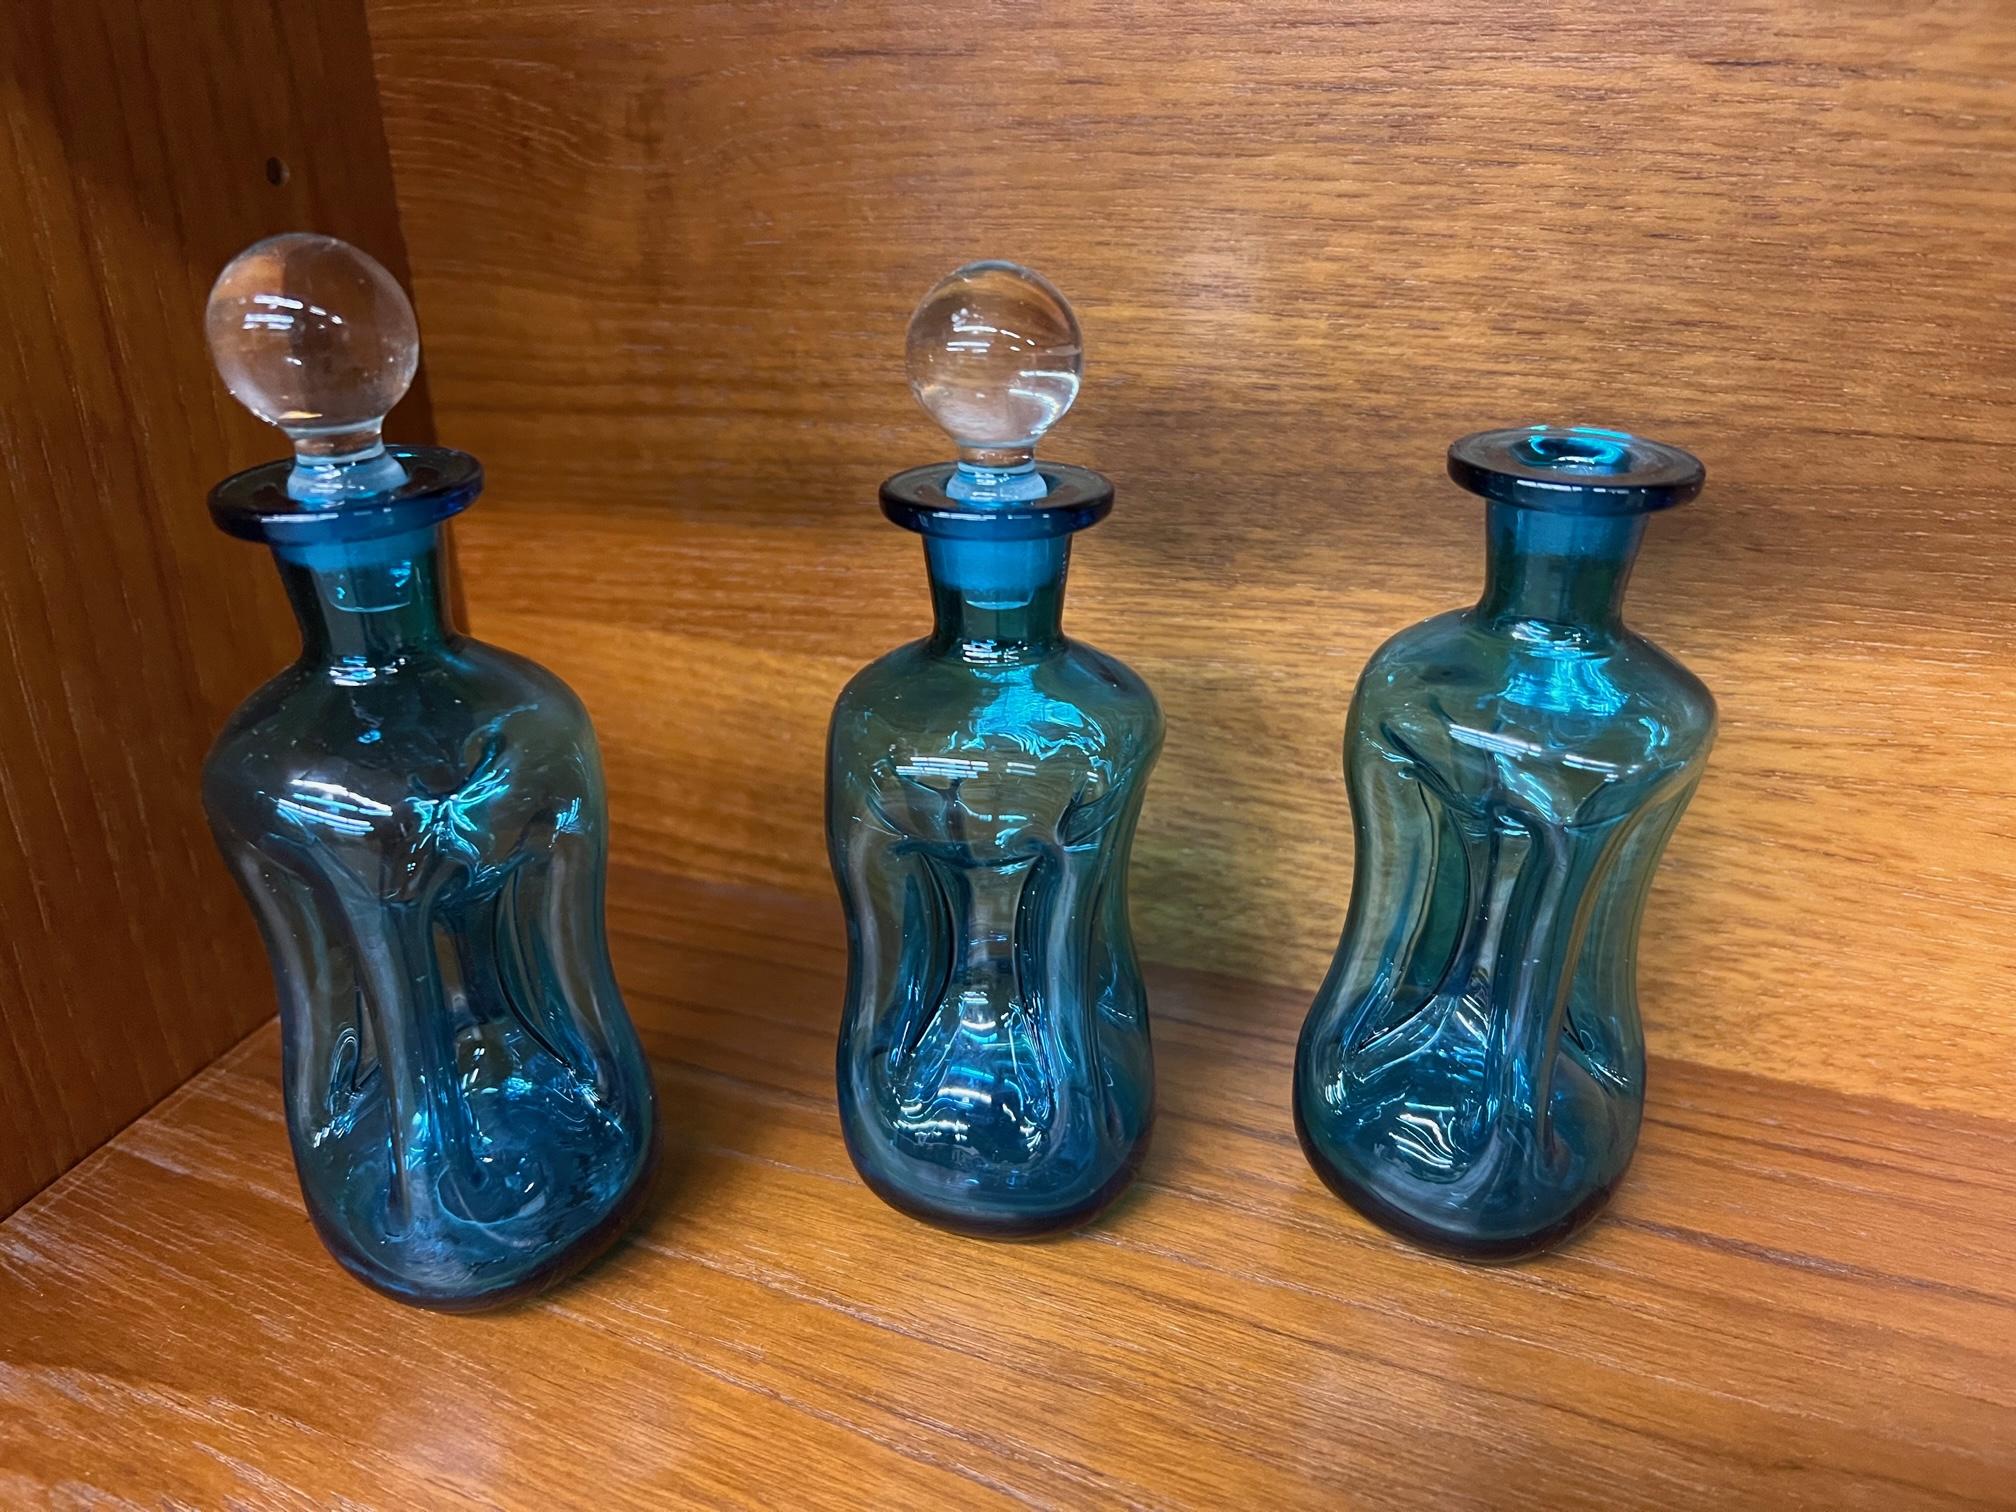 Set aus 3 blauen Glaskaraffen von Holmegaard. Kluk Kluk-Karaffen werden wegen des Geräuschs, das sie beim Einschenken in ein Cocktailglas machen, so genannt. Zwei mit Stöpsel, einer ohne Stöpsel.
Mundgeblasenes Glas mit gequetschten Seiten,